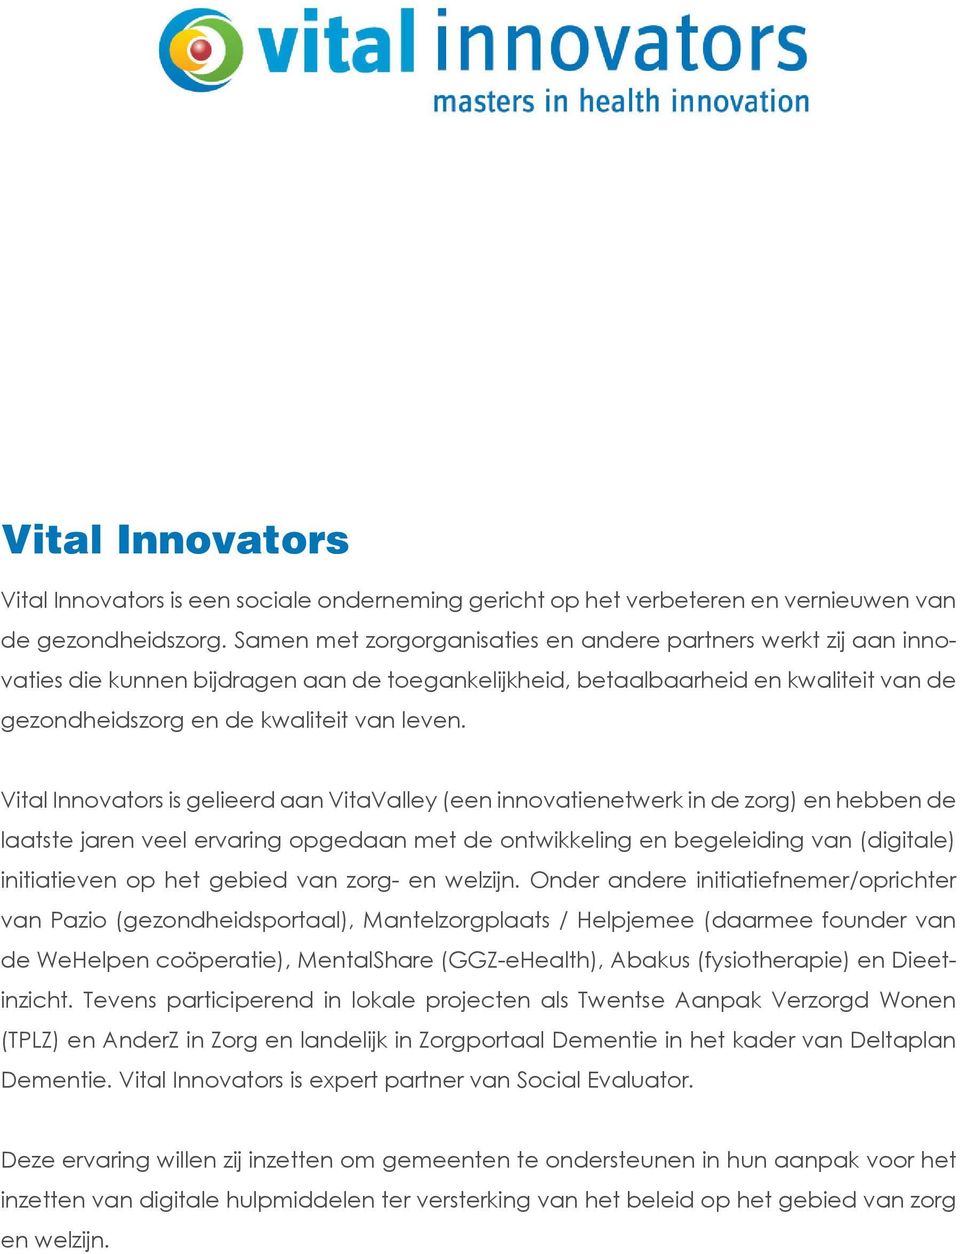 Vital Innovators is gelieerd aan VitaValley (een innovatienetwerk in de zorg) en hebben de laatste jaren veel ervaring opgedaan met de ontwikkeling en begeleiding van (digitale) initiatieven op het